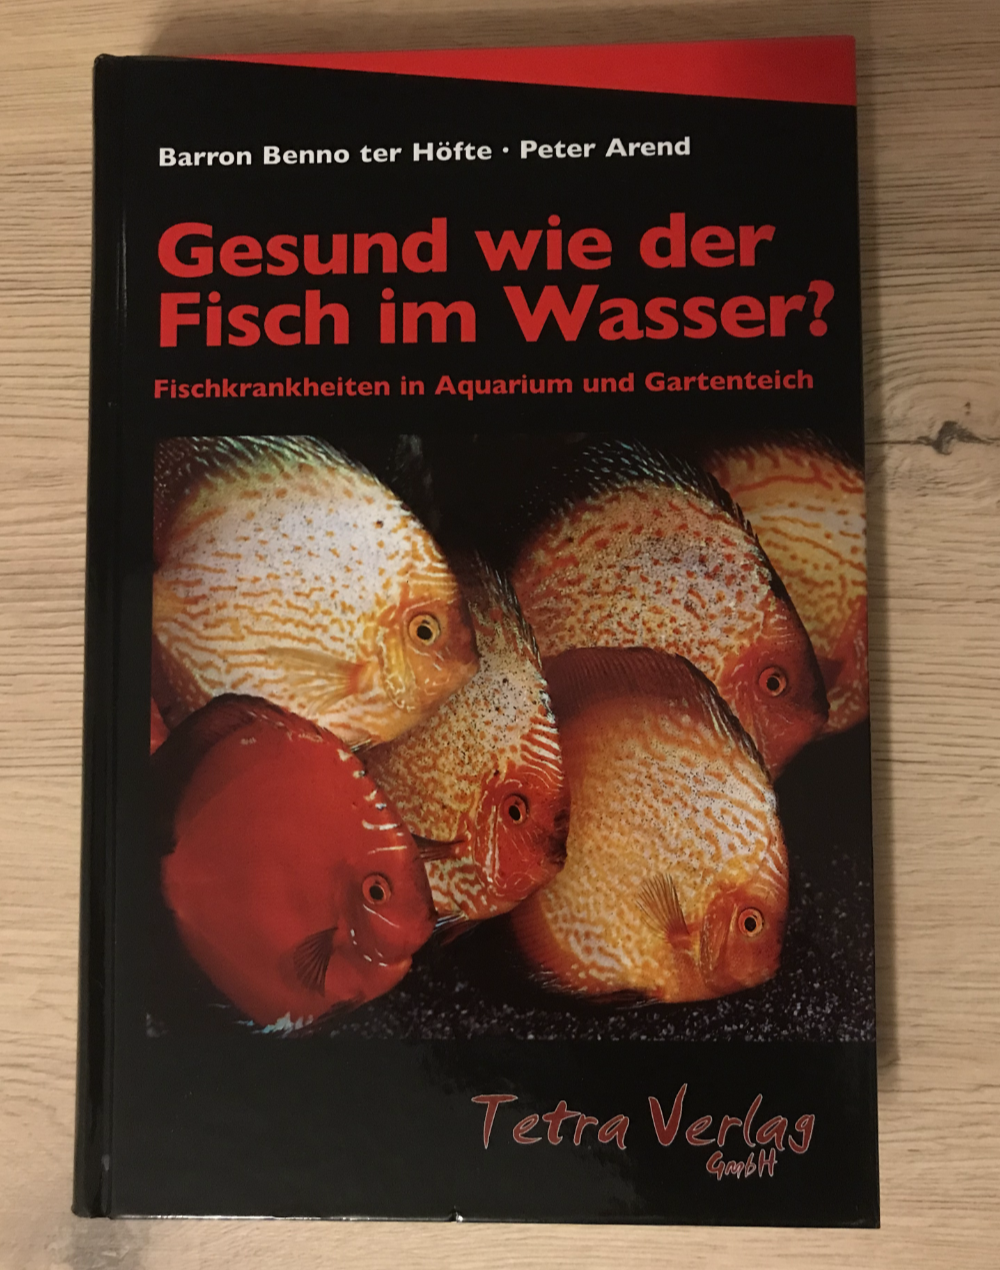 Foto des Buches Gesund wie der Fisch im Wasser? Fischkrankheiten in Aquarium und Gartenteich von Barron Benno ter Höfte und Peter Arend